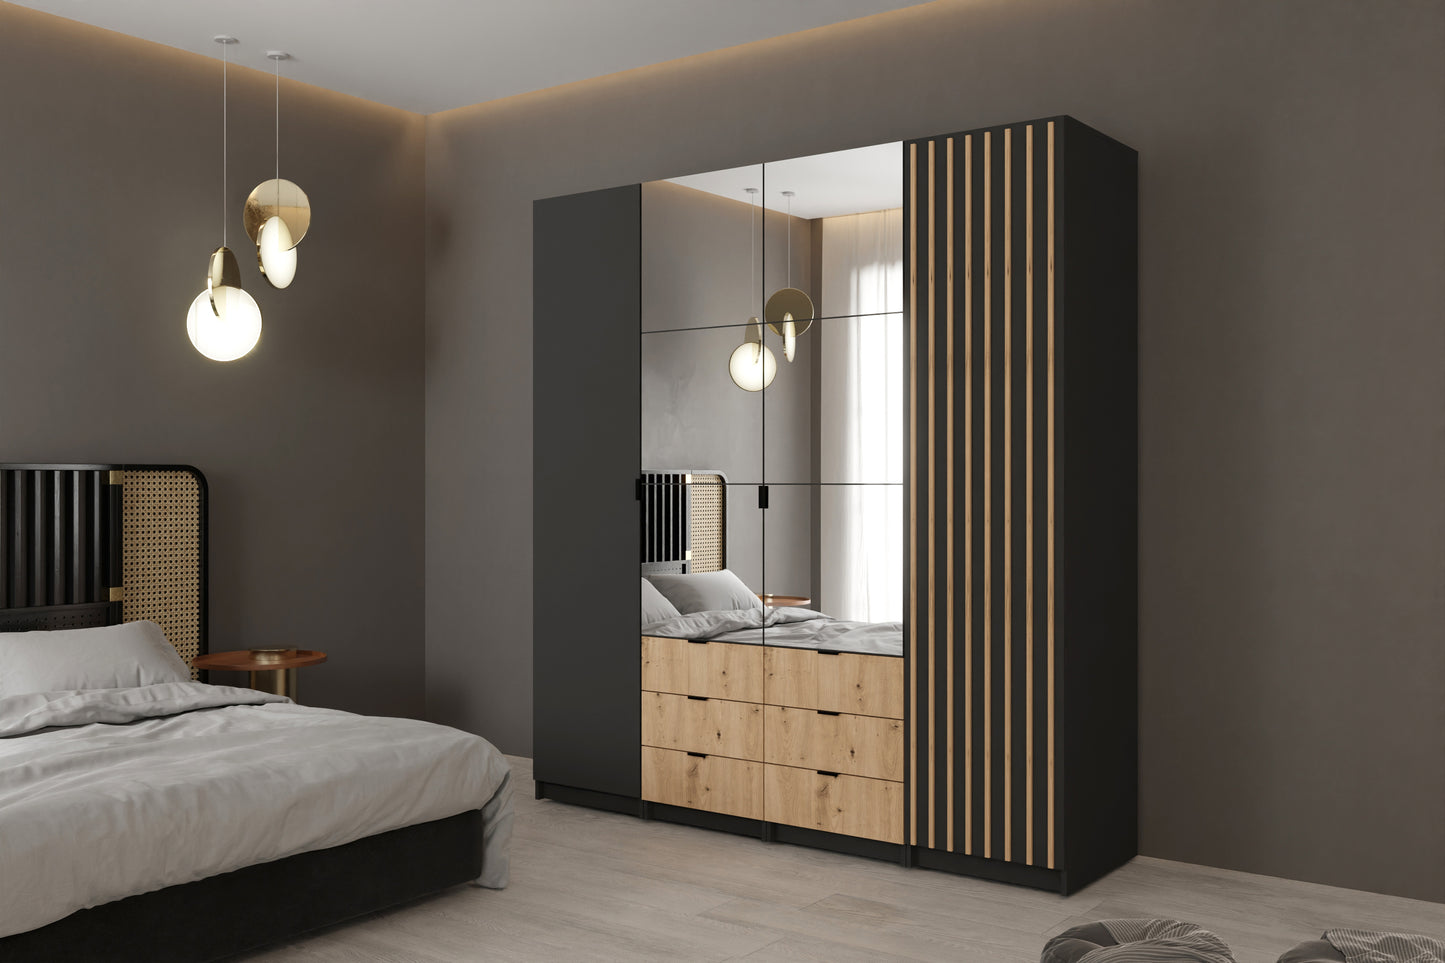 Aranżacja przedstawiająca ustawienie szafy w minimalistycznym wnętrzu. Idealnie wkomponowuje się w ciemne pomieszczenie dzięki zastosowanym w niej jasnym szufladom i nowoczesnym lamelom.